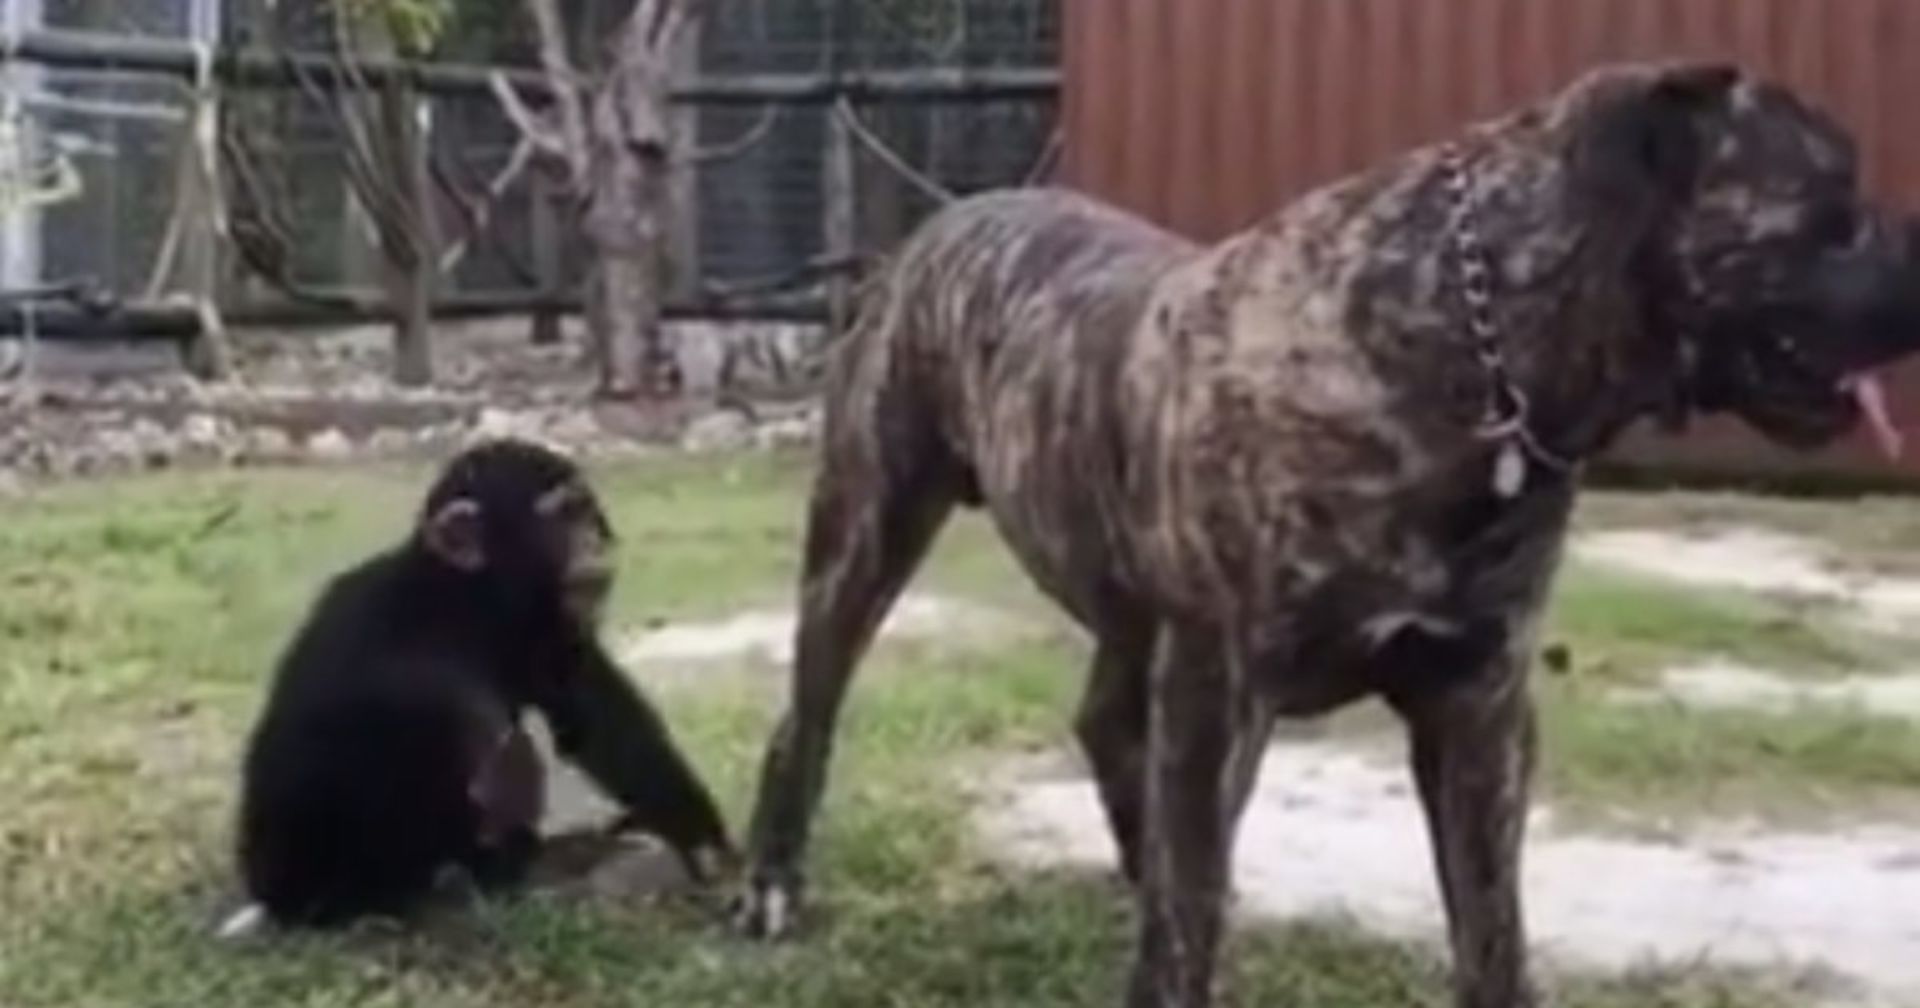 Schimpanse greift Riesen Pitbull von hinten an. Seine Reaktion macht sprachlos!